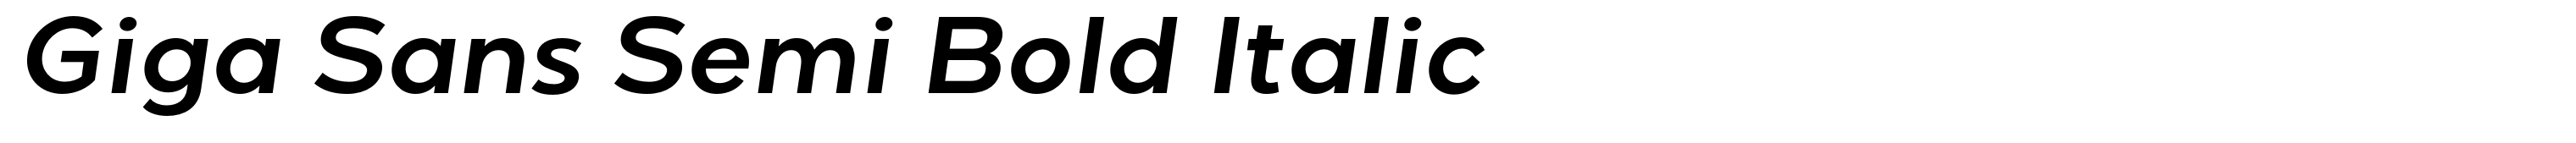 Giga Sans Semi Bold Italic